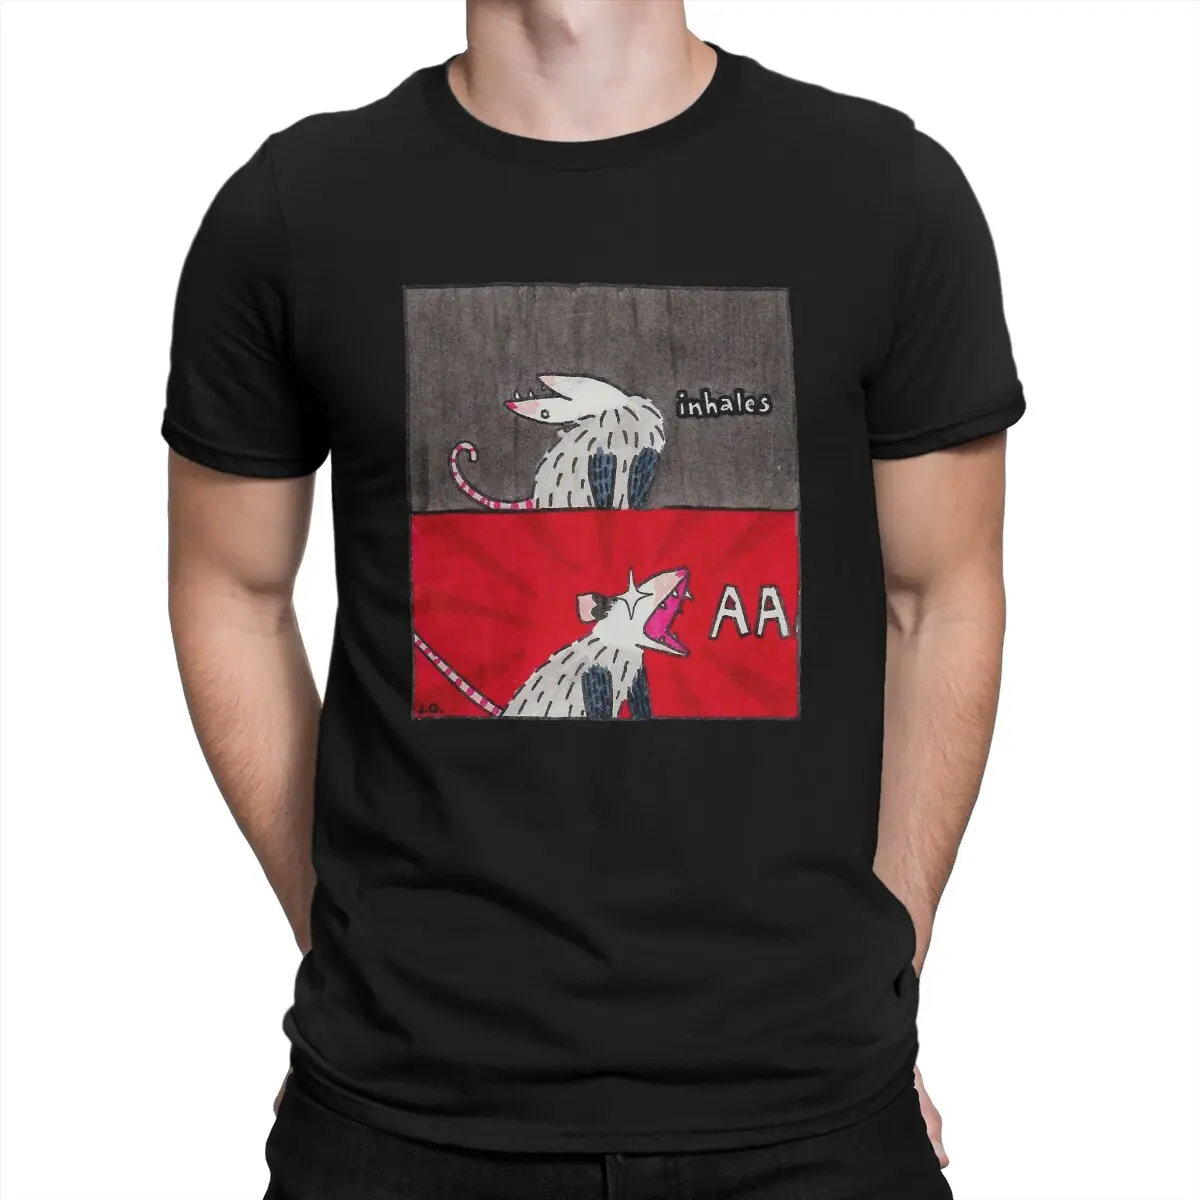 

Мужские футболки с рисунком большого крика времени, забавные 100% хлопковые футболки с коротким рукавом, с рисунком Opossum Mouse Animal, одежда с круг...